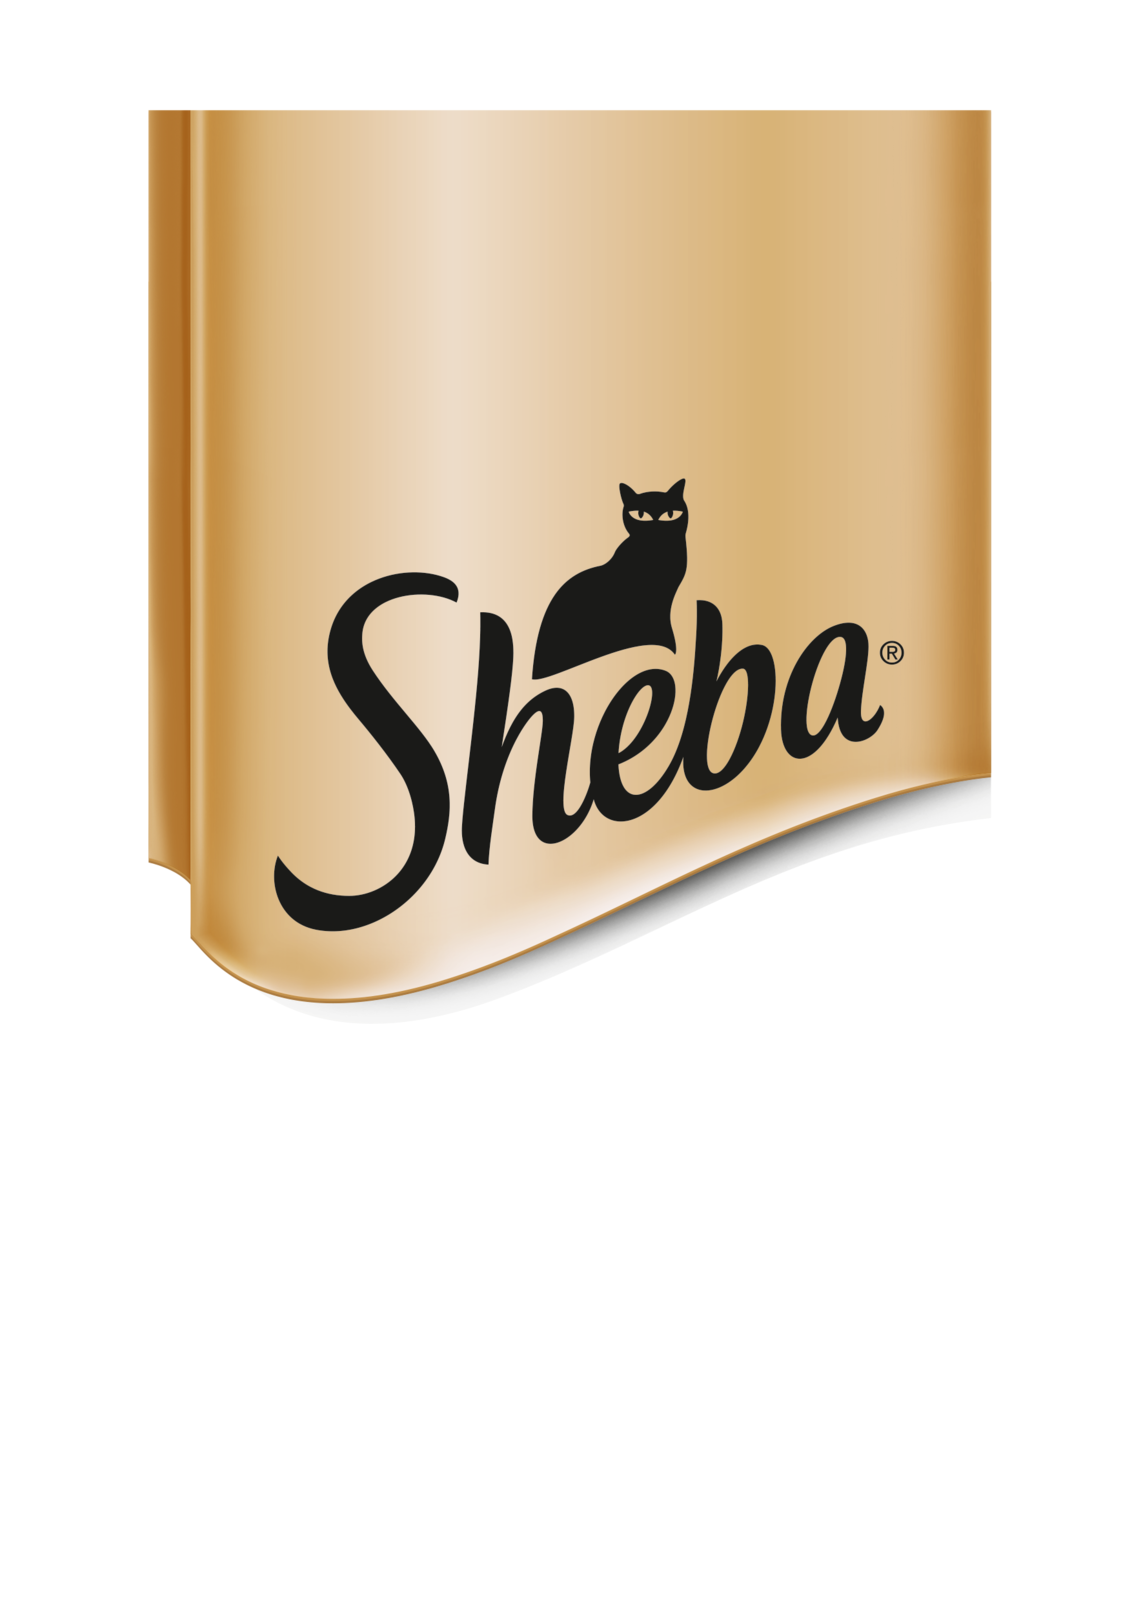 Sachet fraicheur pour chats au poisson Sheba 4x85g sur